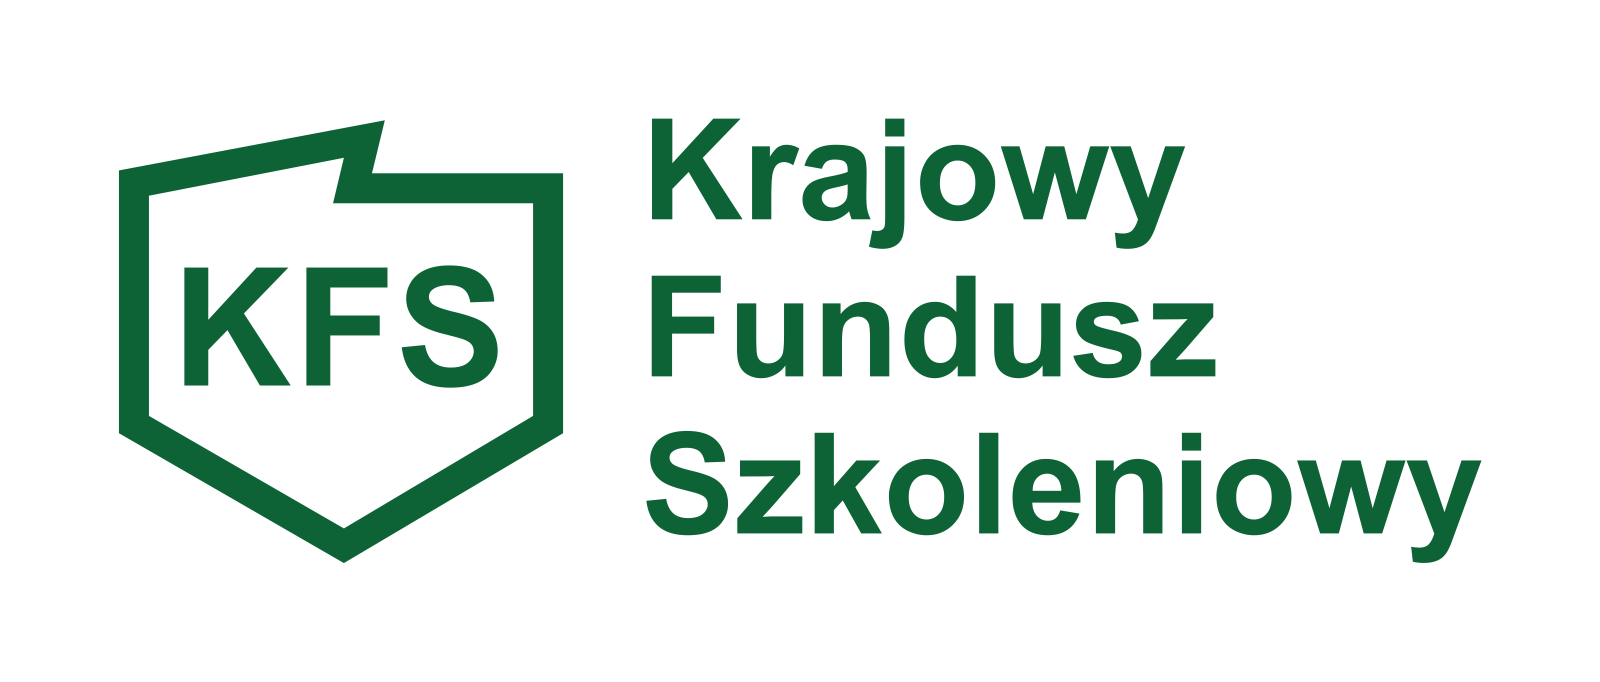 Krajowy Fundusz Szkoleniowy - logo